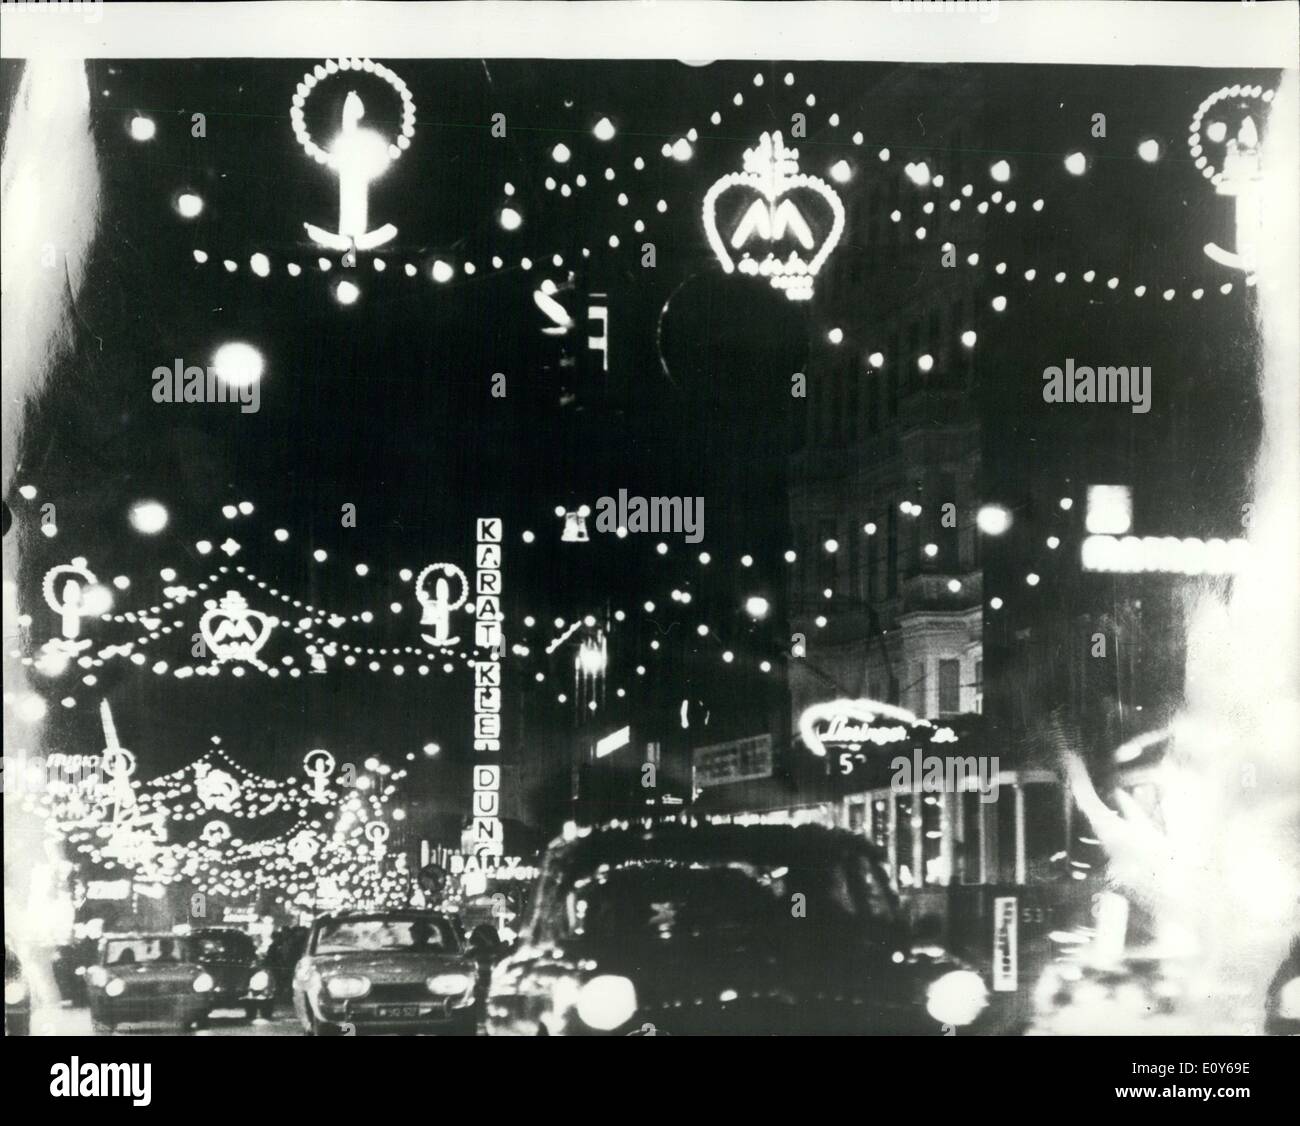 Le 12 décembre 1968 - Noël illuminations à Vienne. La photo montre la vue sur les illuminations de Noël dans l'une des principales rues. Banque D'Images